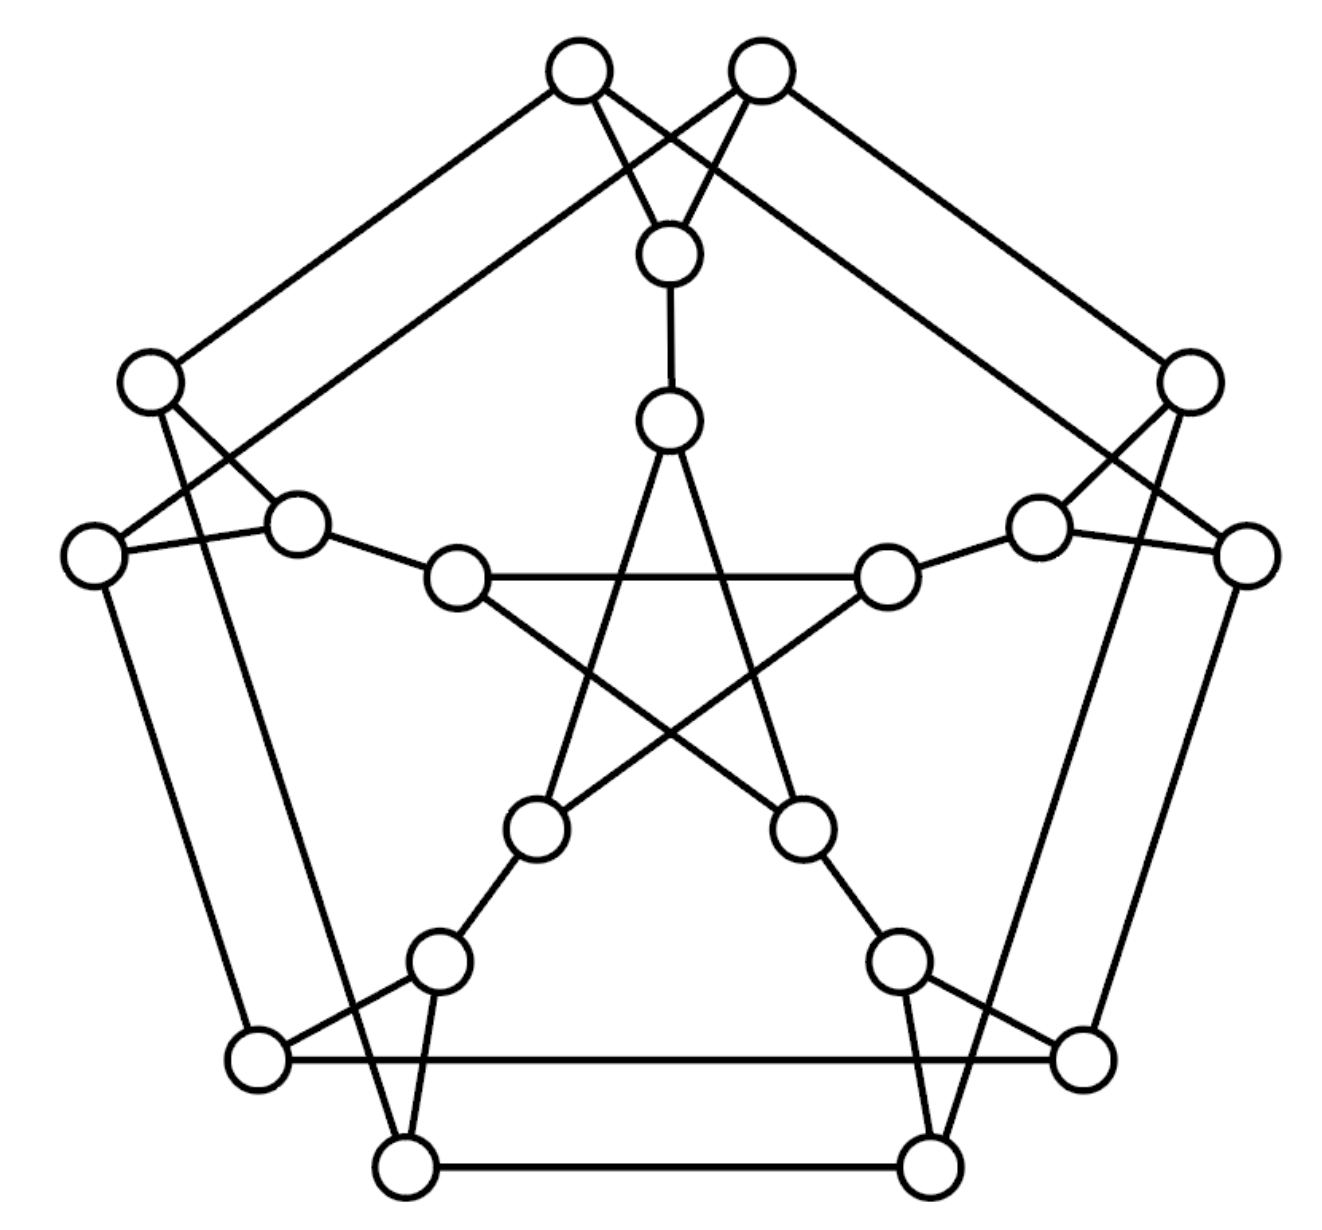 Théorie des graphes - 20 chaînes sur Kadena